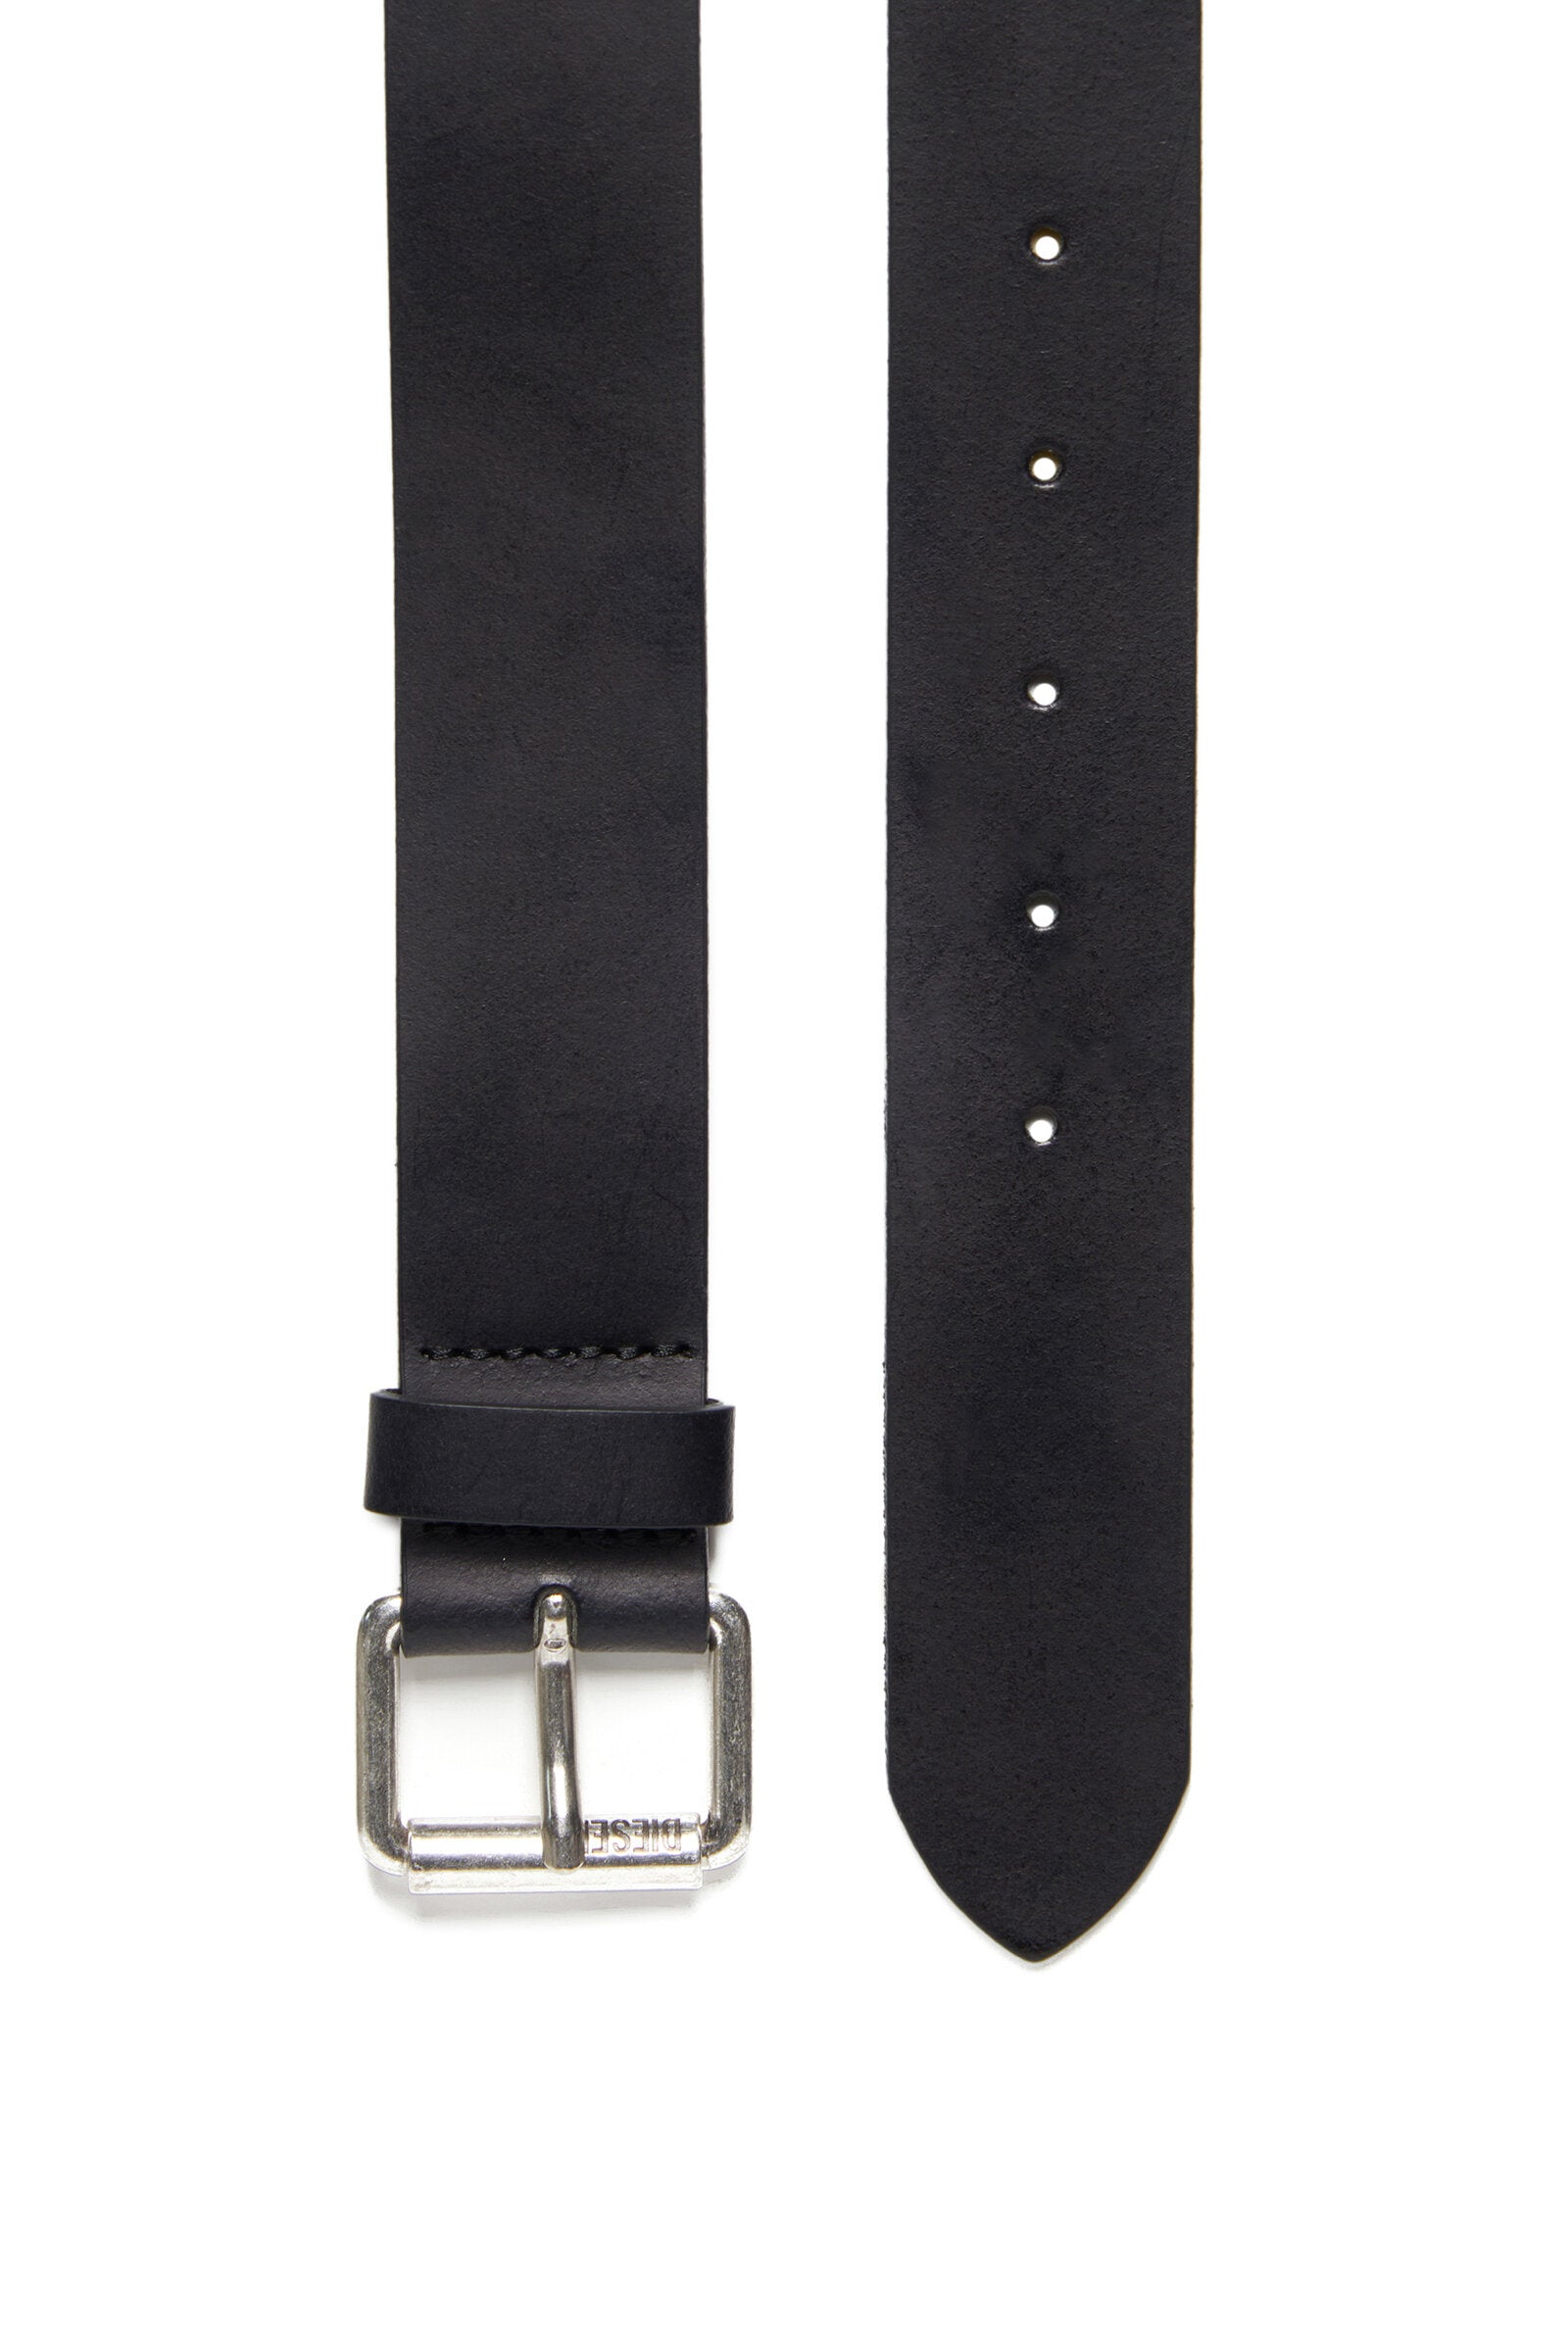 Handmade oak bark leather, heavy duty belt with solid brass buckle. —  ERNEST WALKER LTD.